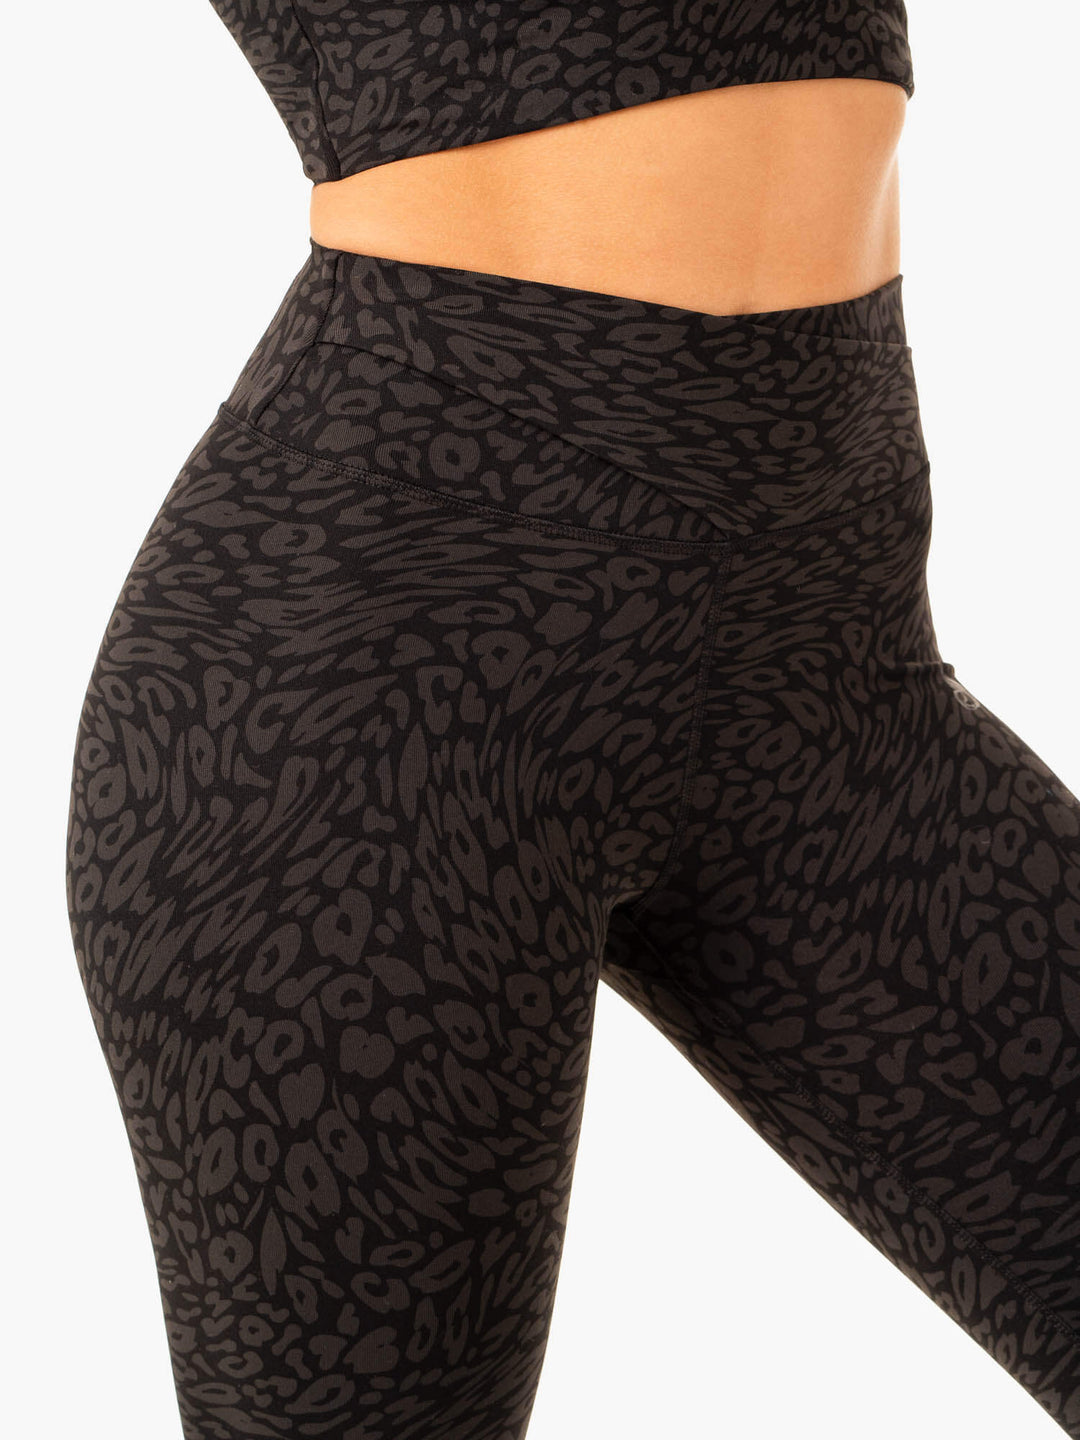 Leopard – Print High Waisted Leggings for Women